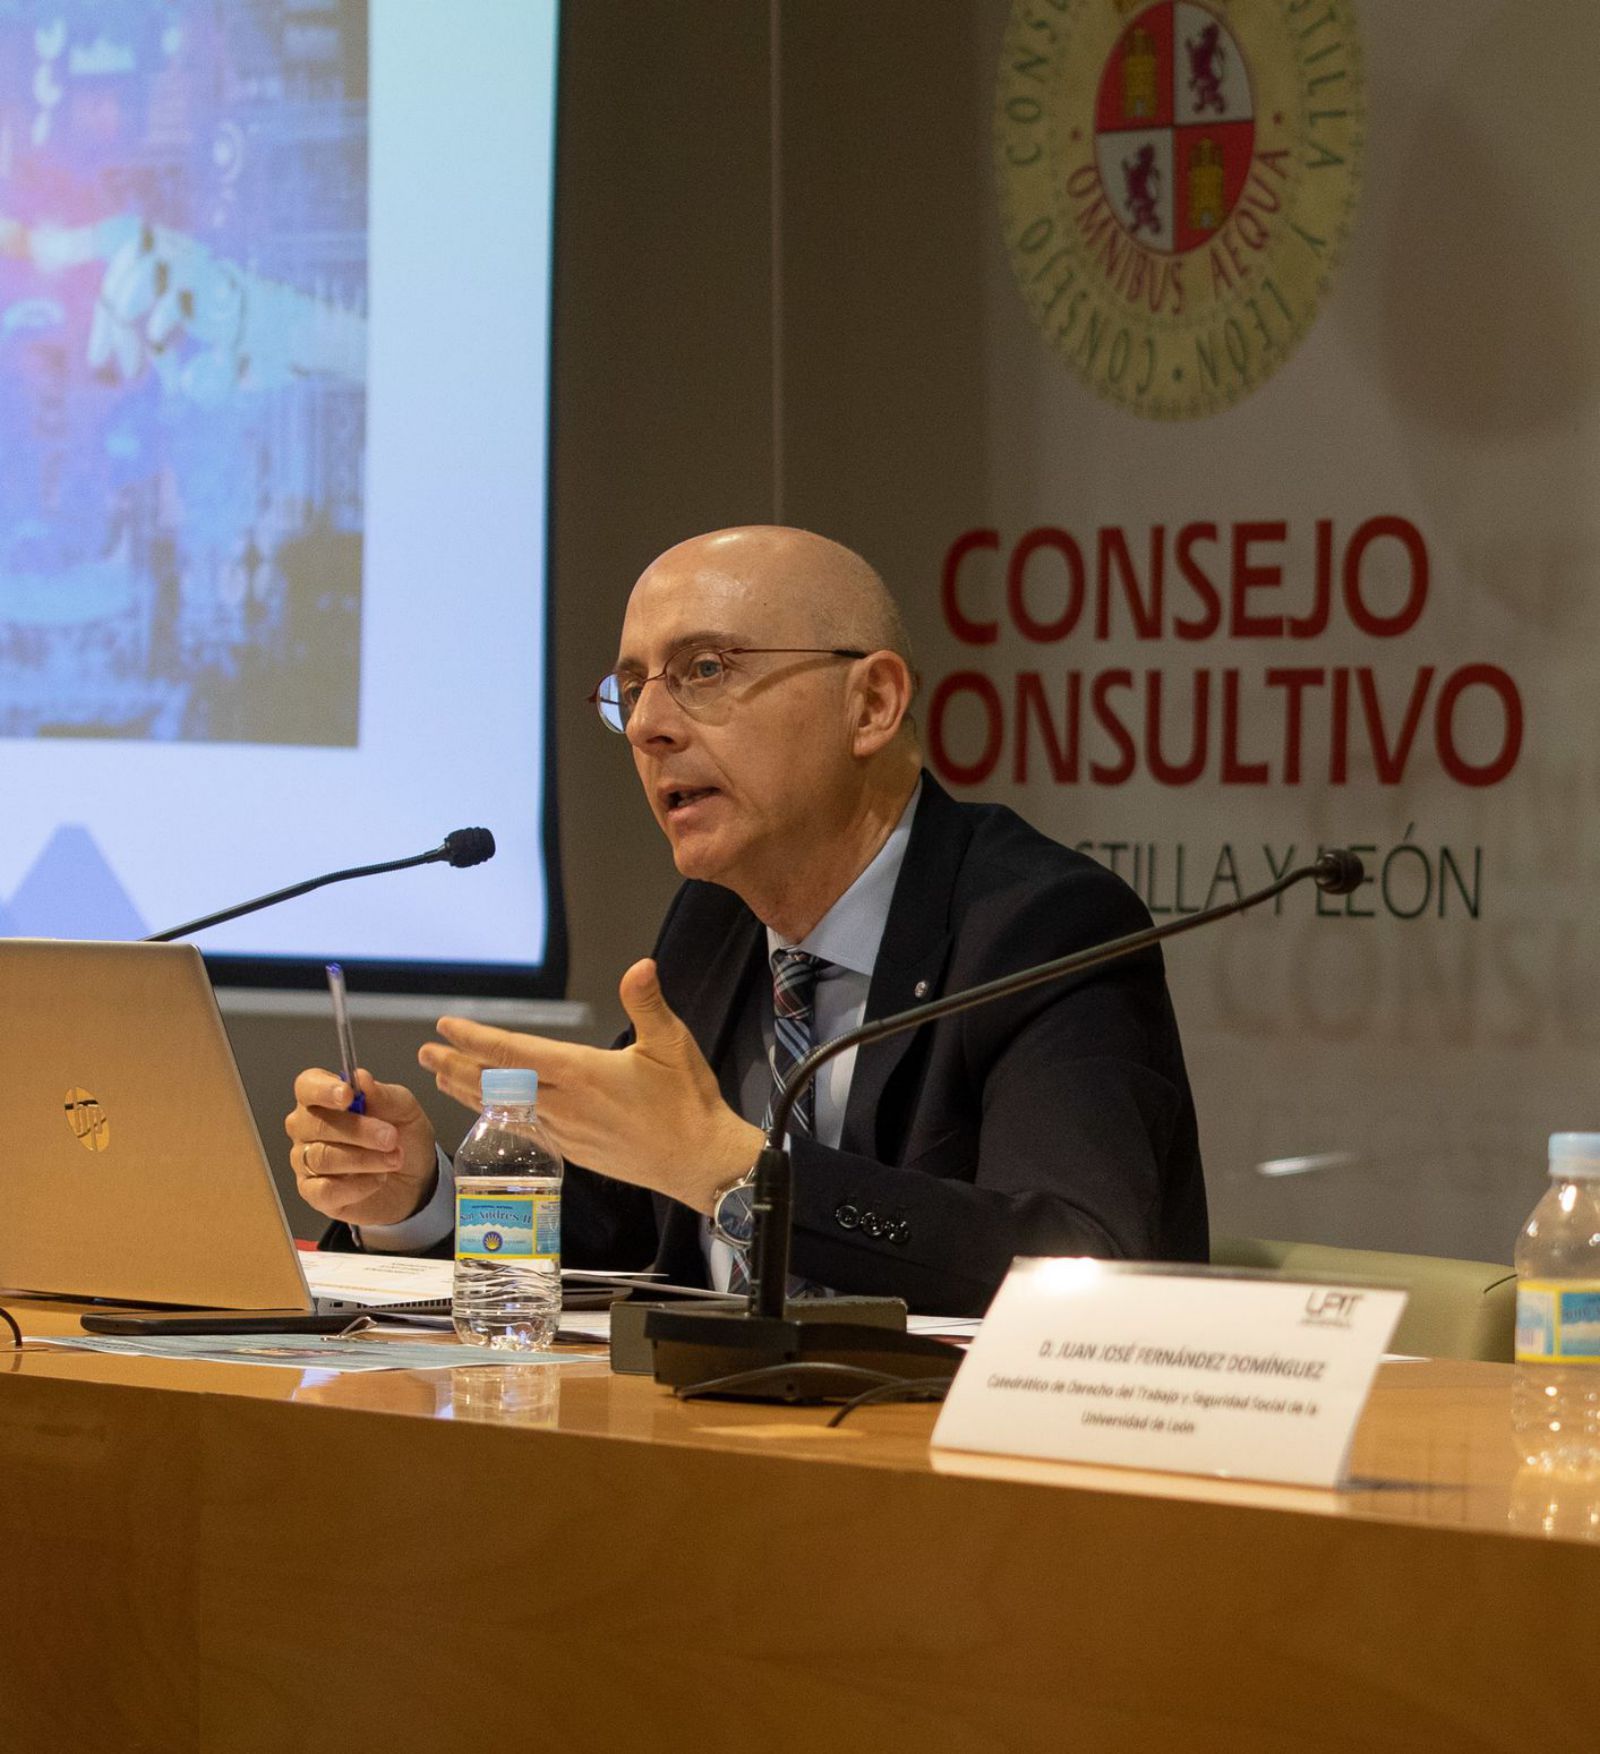 El director territorial de la Inspección de Trabajo y Seguridad Social del País Vasco, durante el coloquio. | Emilio Fraile